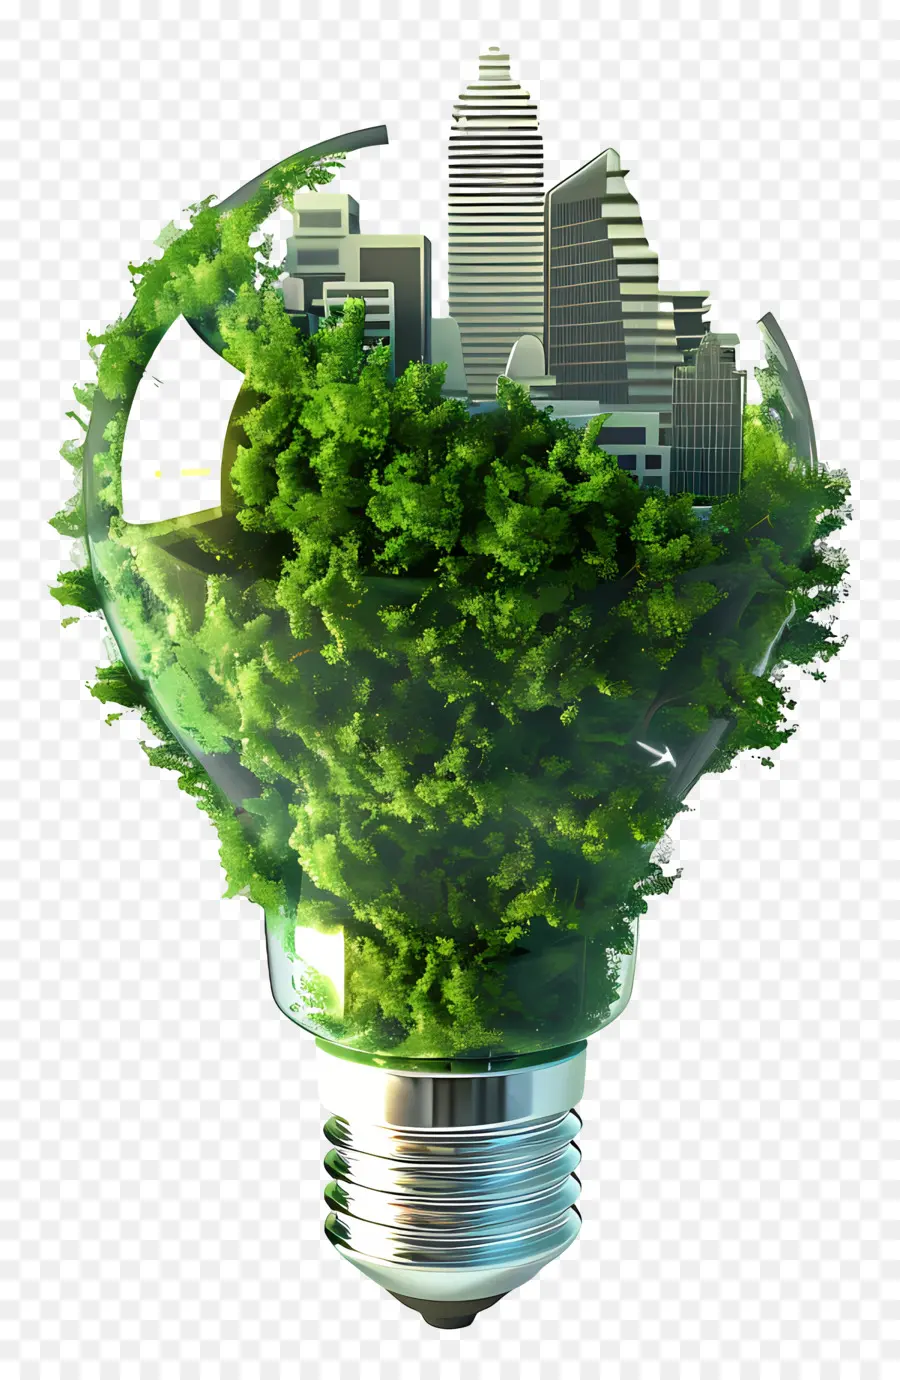 Nachhaltigkeit umweltfreundliche Nachhaltigkeitsrecycling grüne Pflanzen - Umweltfreundliche Glühbirne aus recycelten Materialien